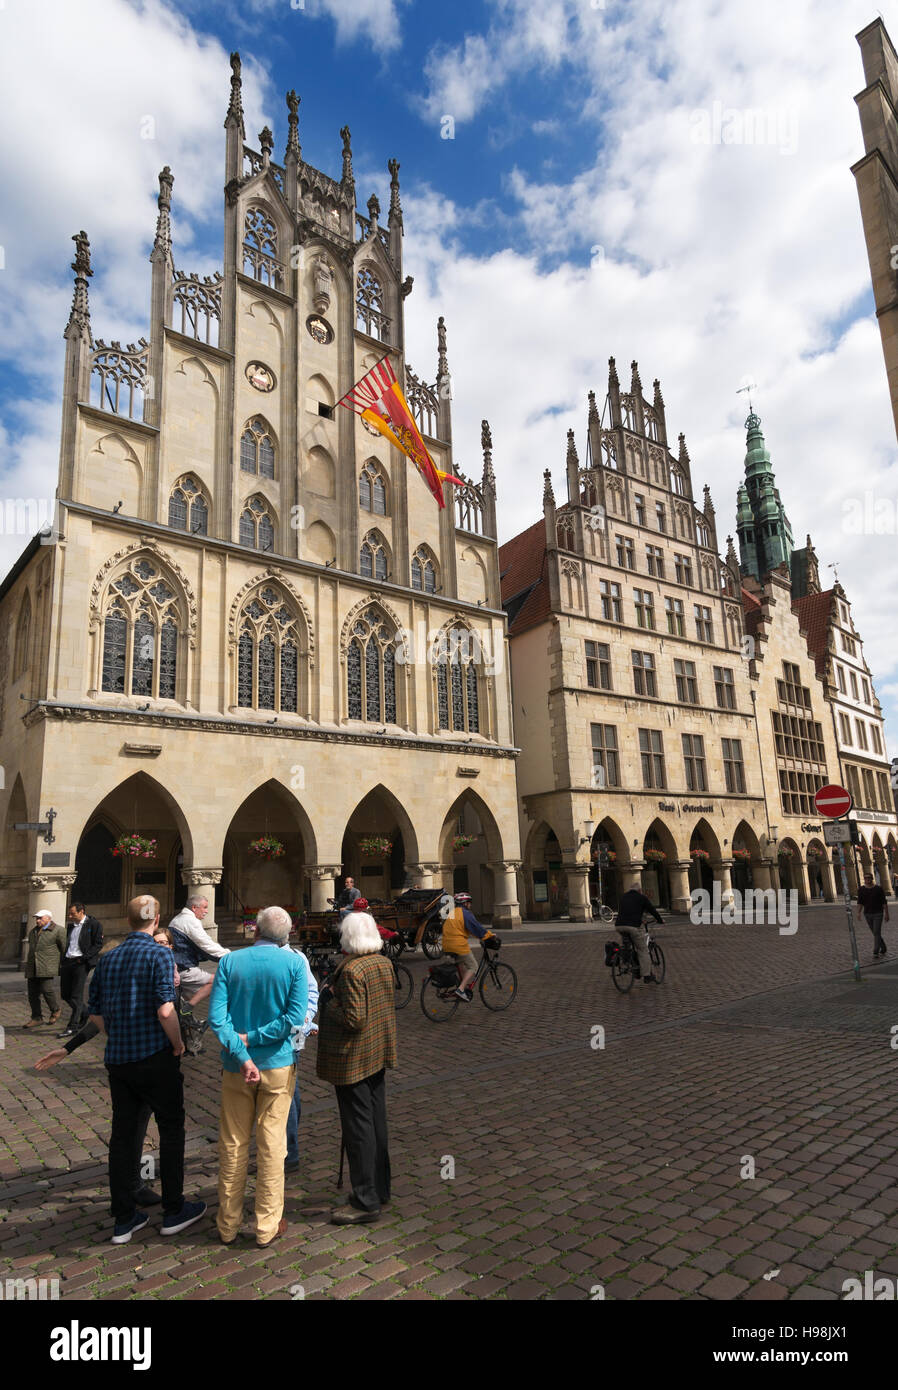 Un groupe de personnes dans la rue avant de l'hôtel de ville Rathaus ou à Munster, Allemagne, Europe Banque D'Images